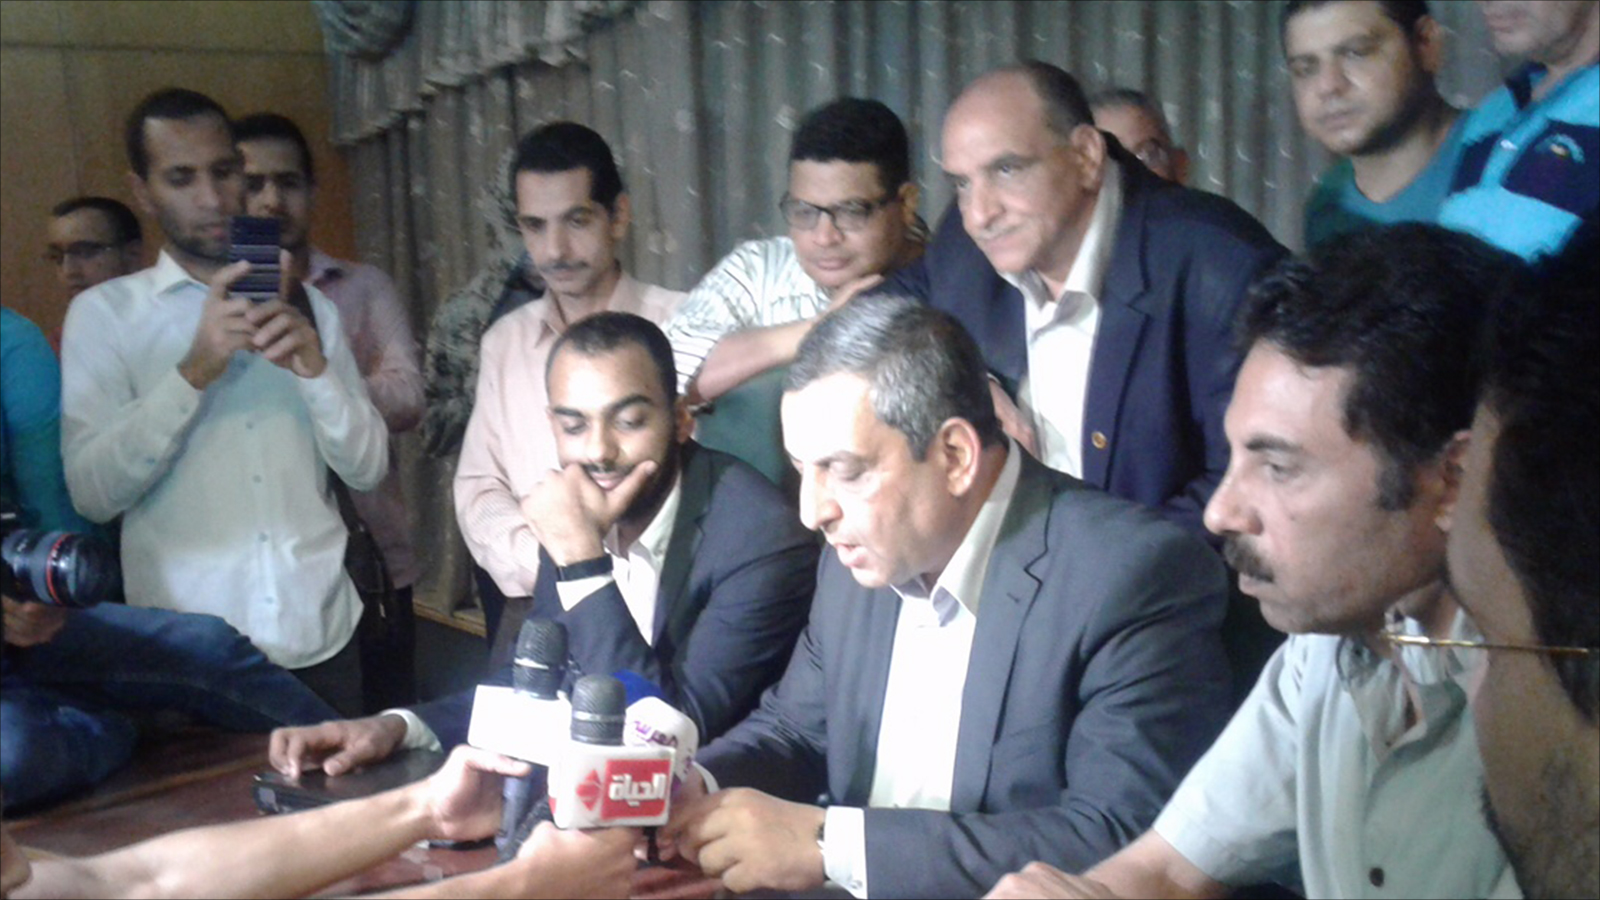 ‪نقيب الصحفيين يحيى قلاش يتوسط أعضاء المجلس أثناء قراءته قرارات الجمعية العمومية للصحفيين‬ (الجزيرة)